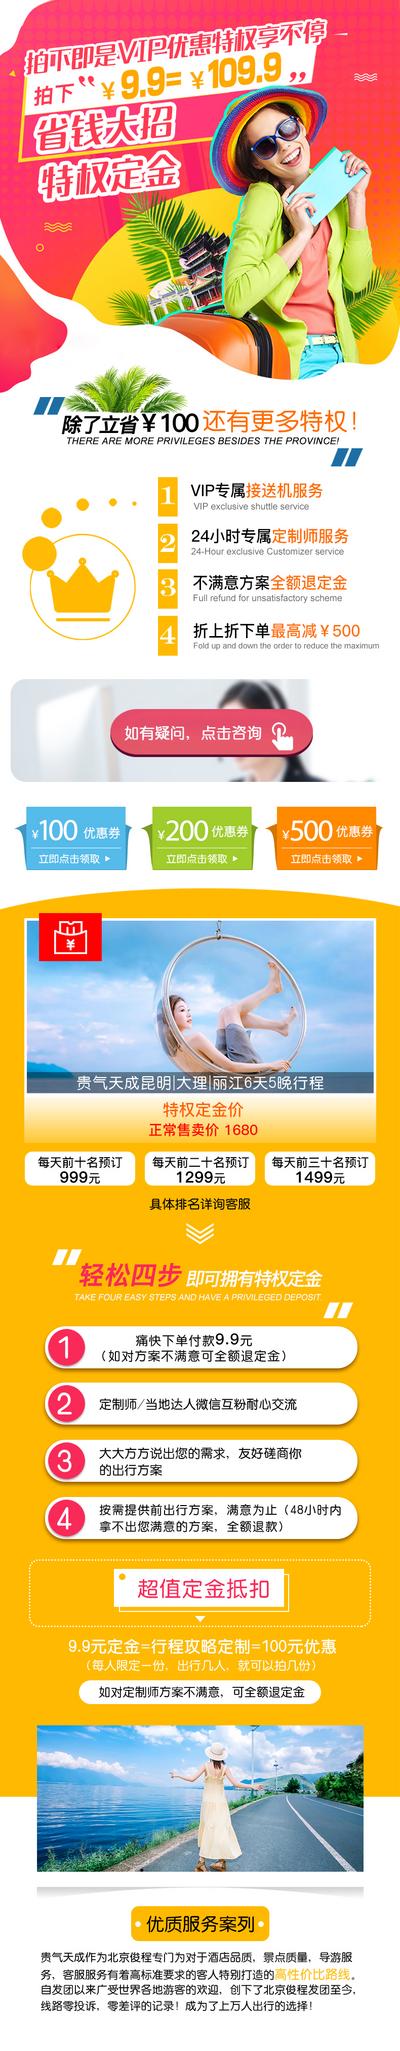 南门网 广告 海报 电商 云南 长图 旅游 行程 